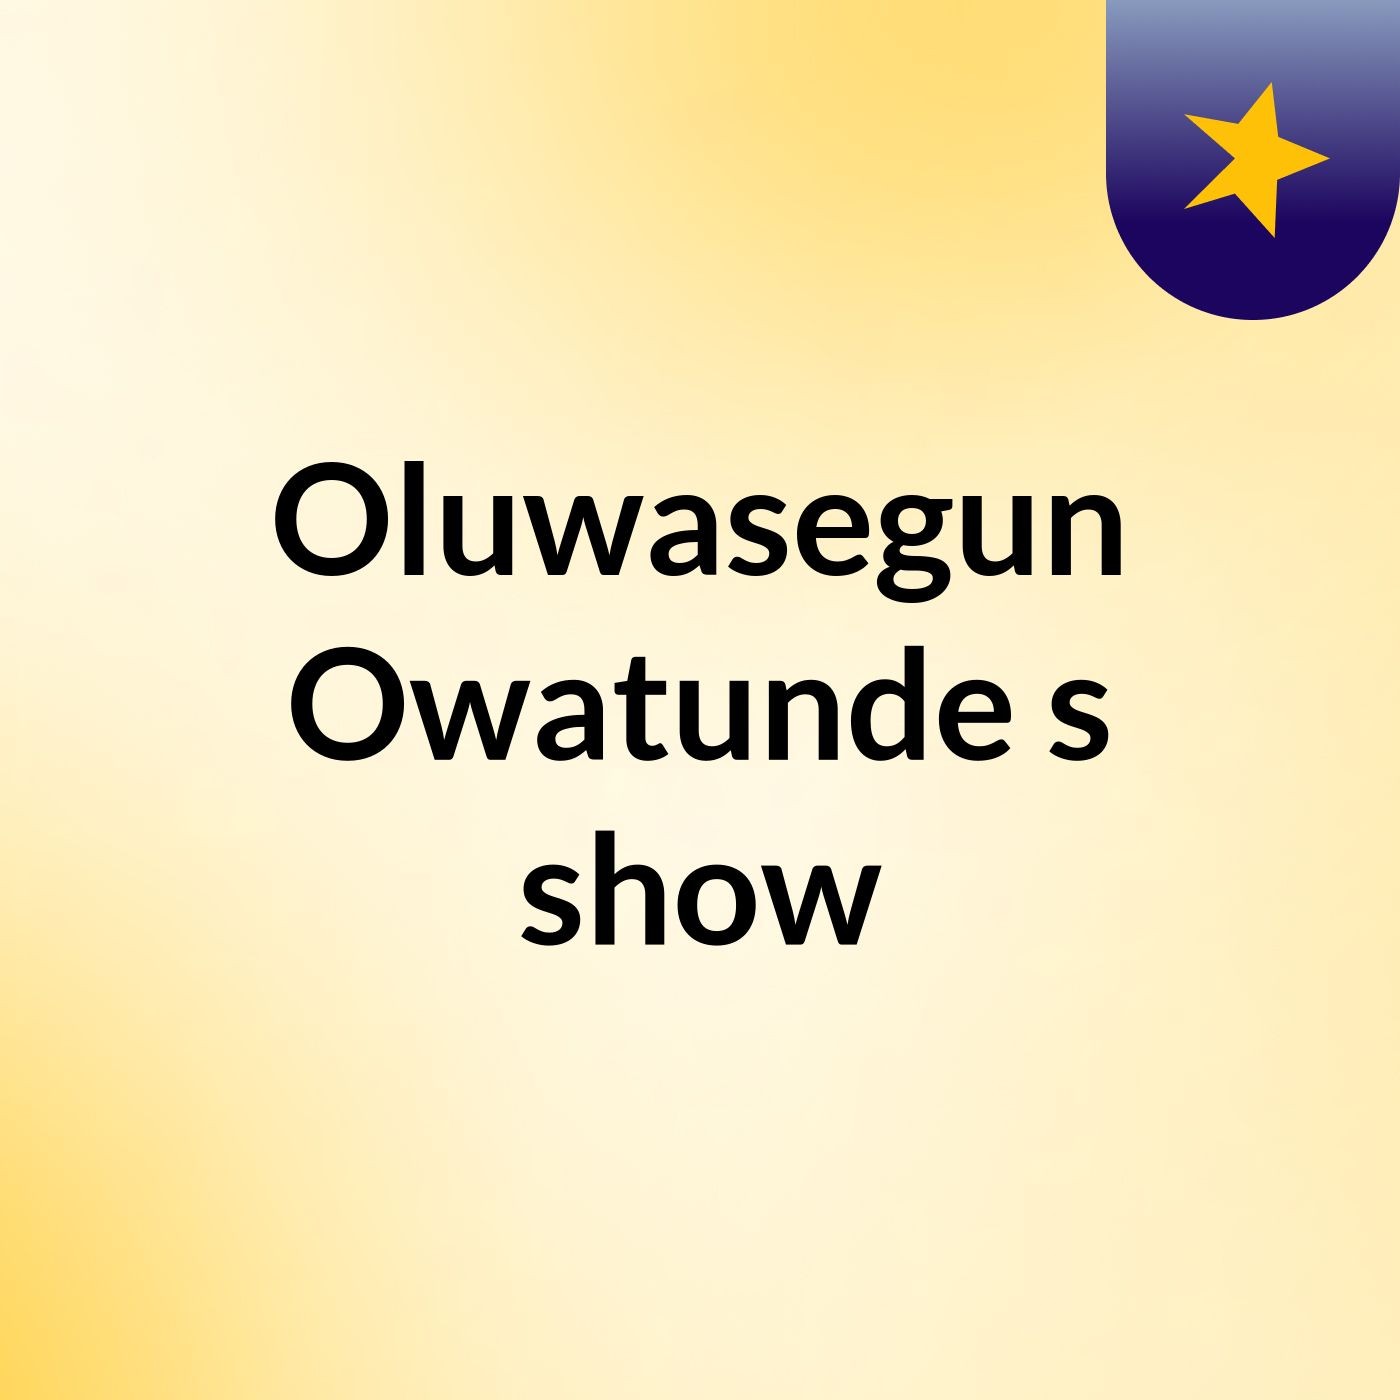 Episode 13 - Oluwasegun Owatunde's show